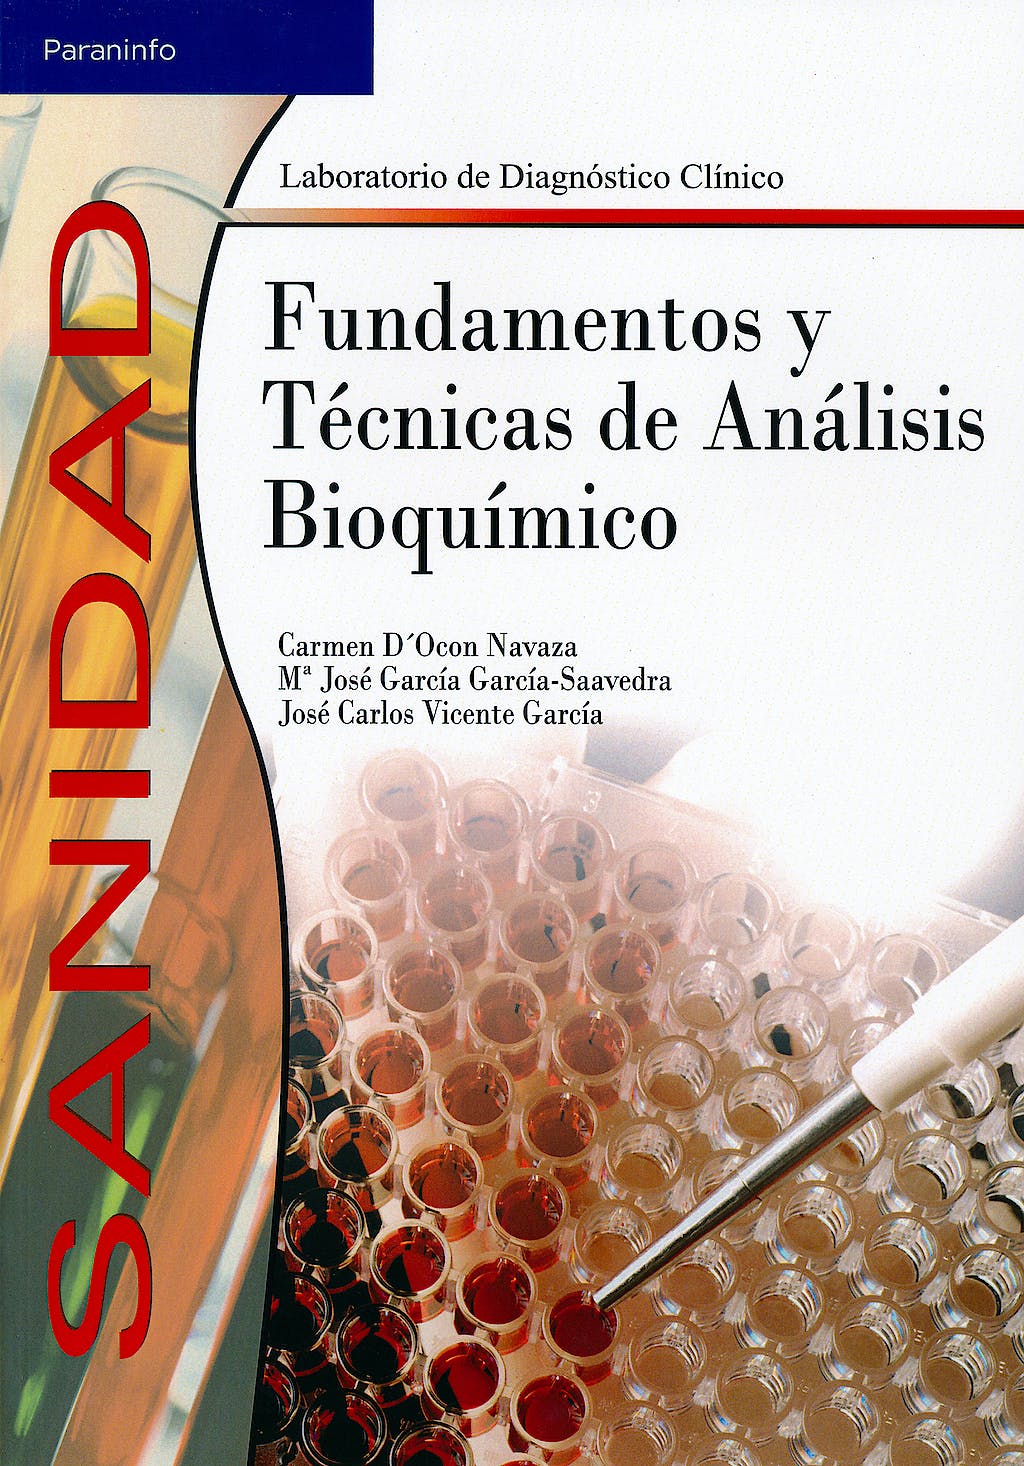 Fundamentos y Técnicas de Análisis Bioquímico